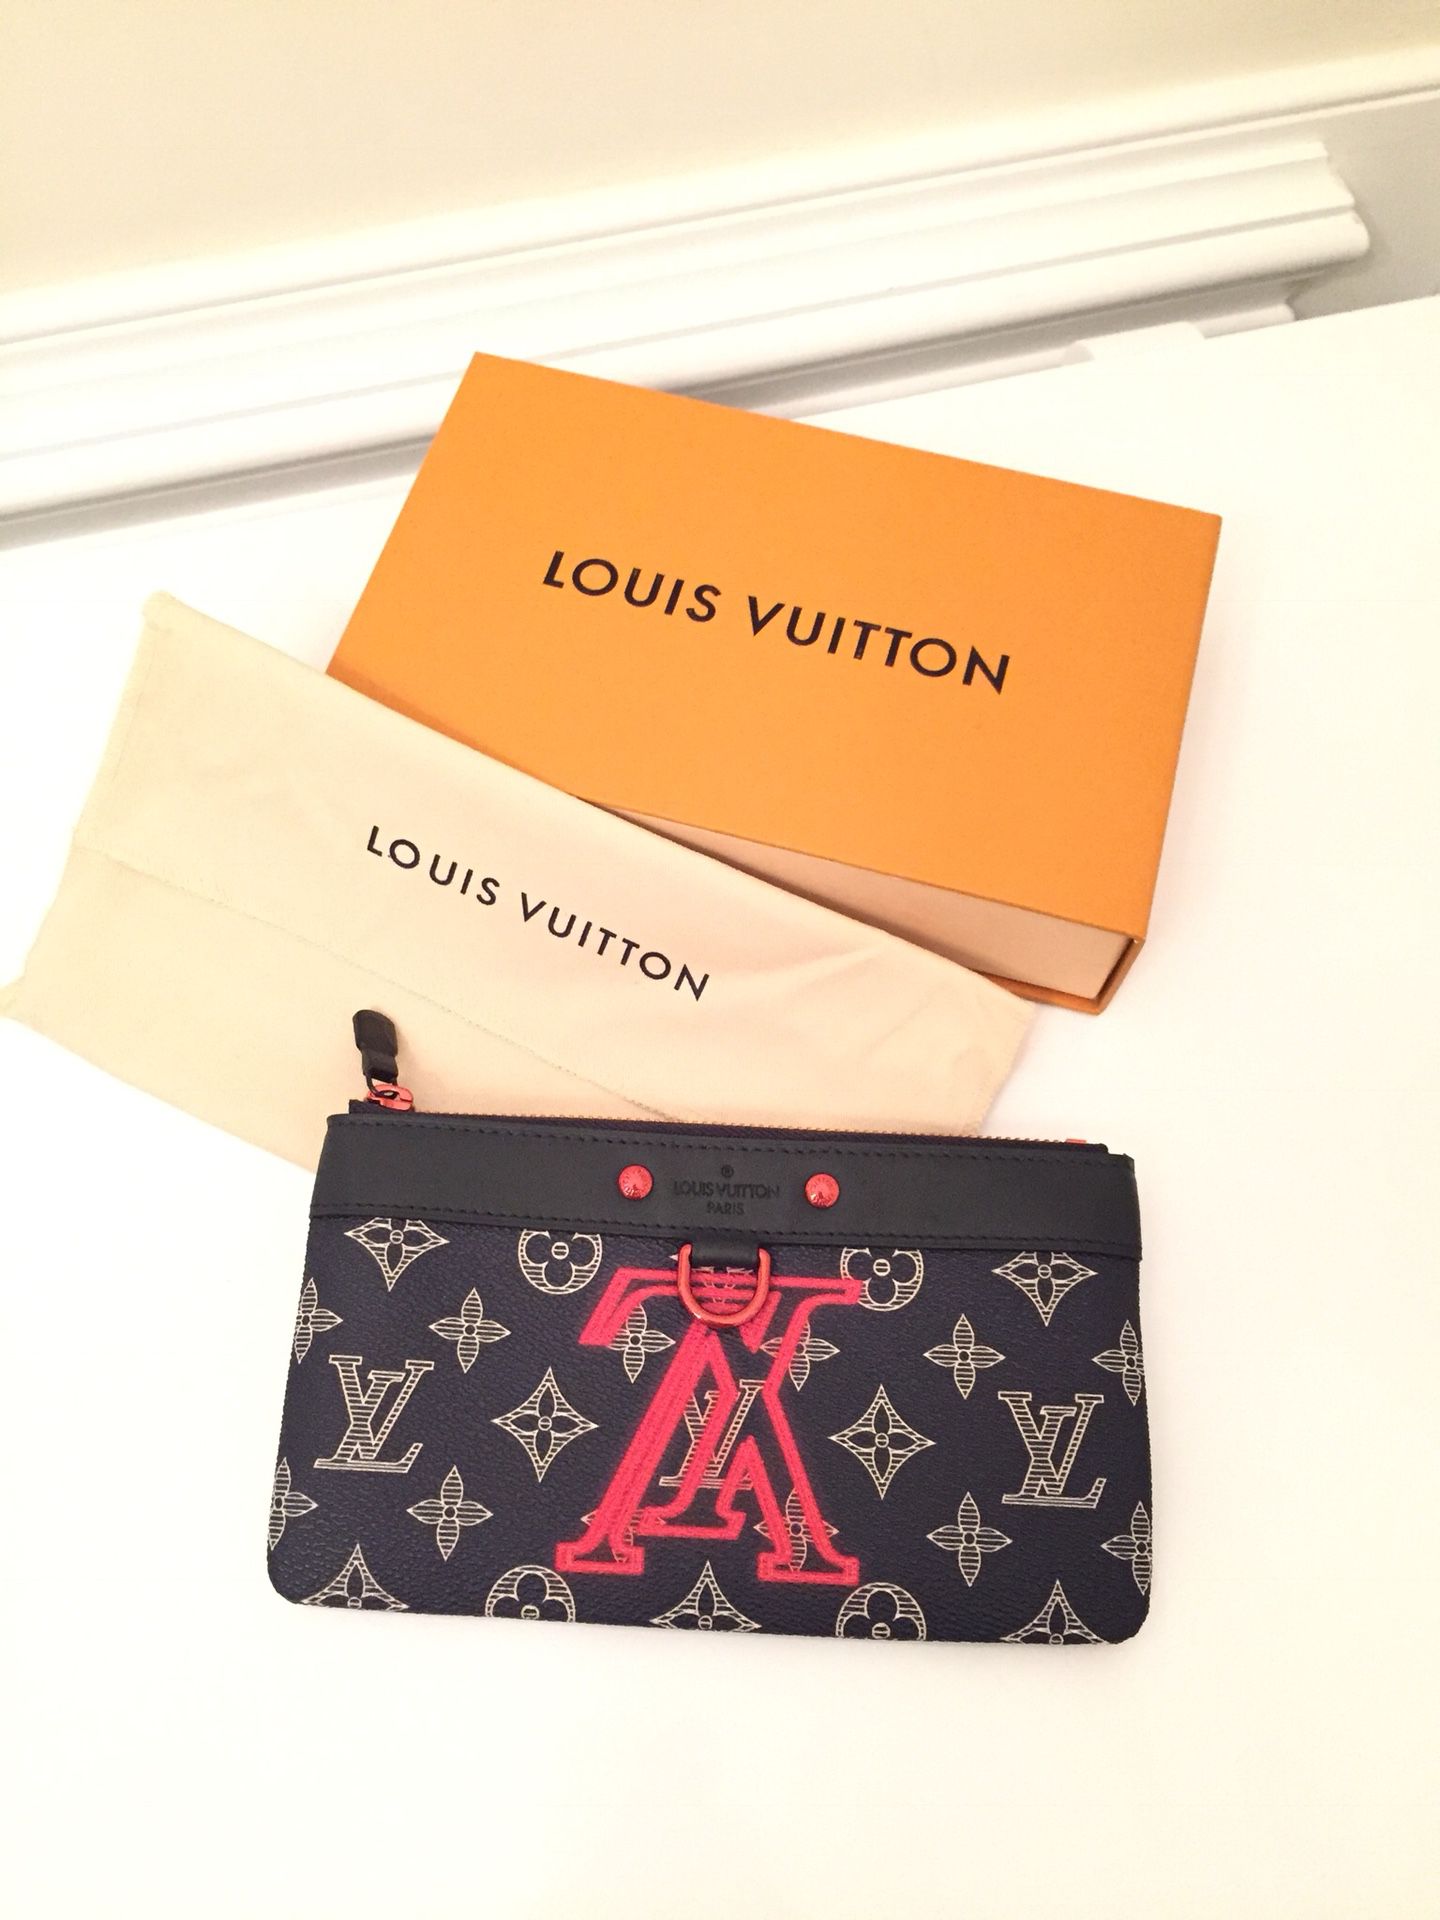 Authentic Louis Vuitton Pochette Apollo PM for Sale in Rocky Mount